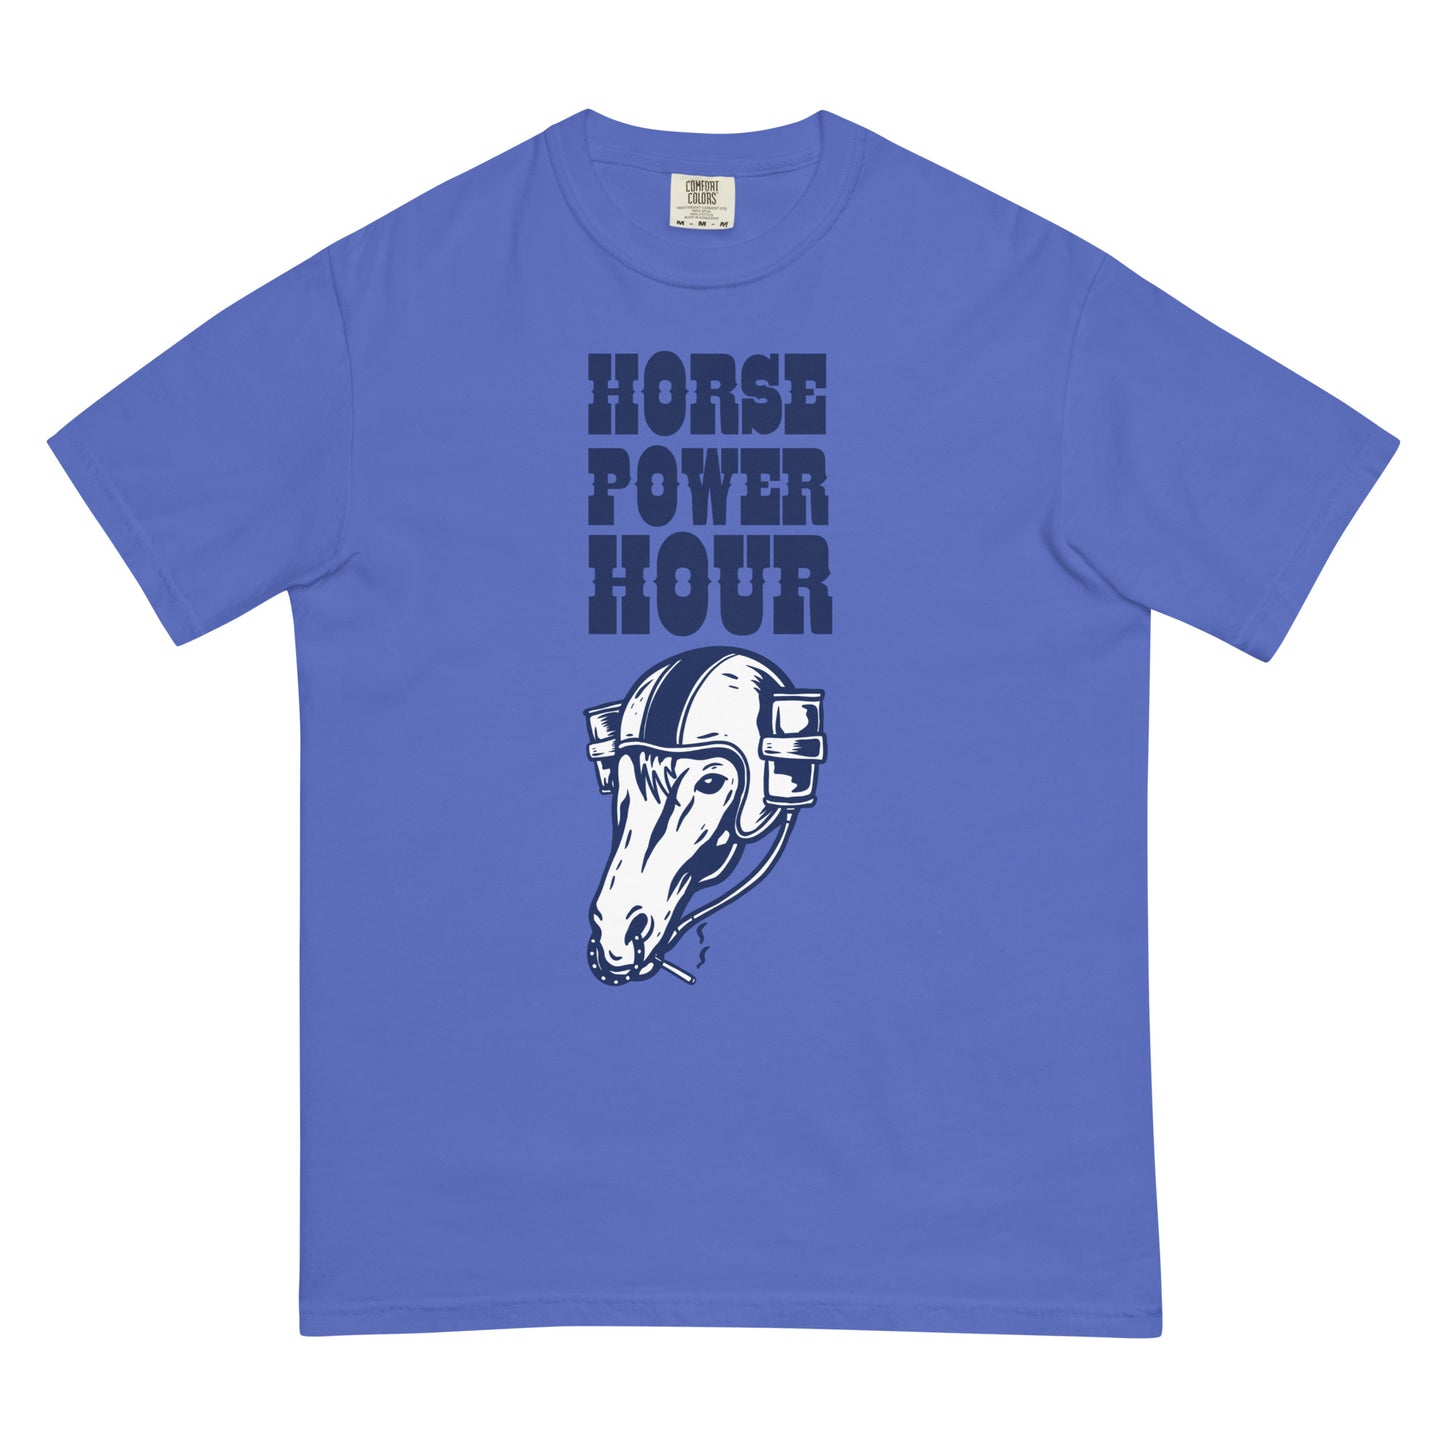 Horse Power Hour T-Shirt